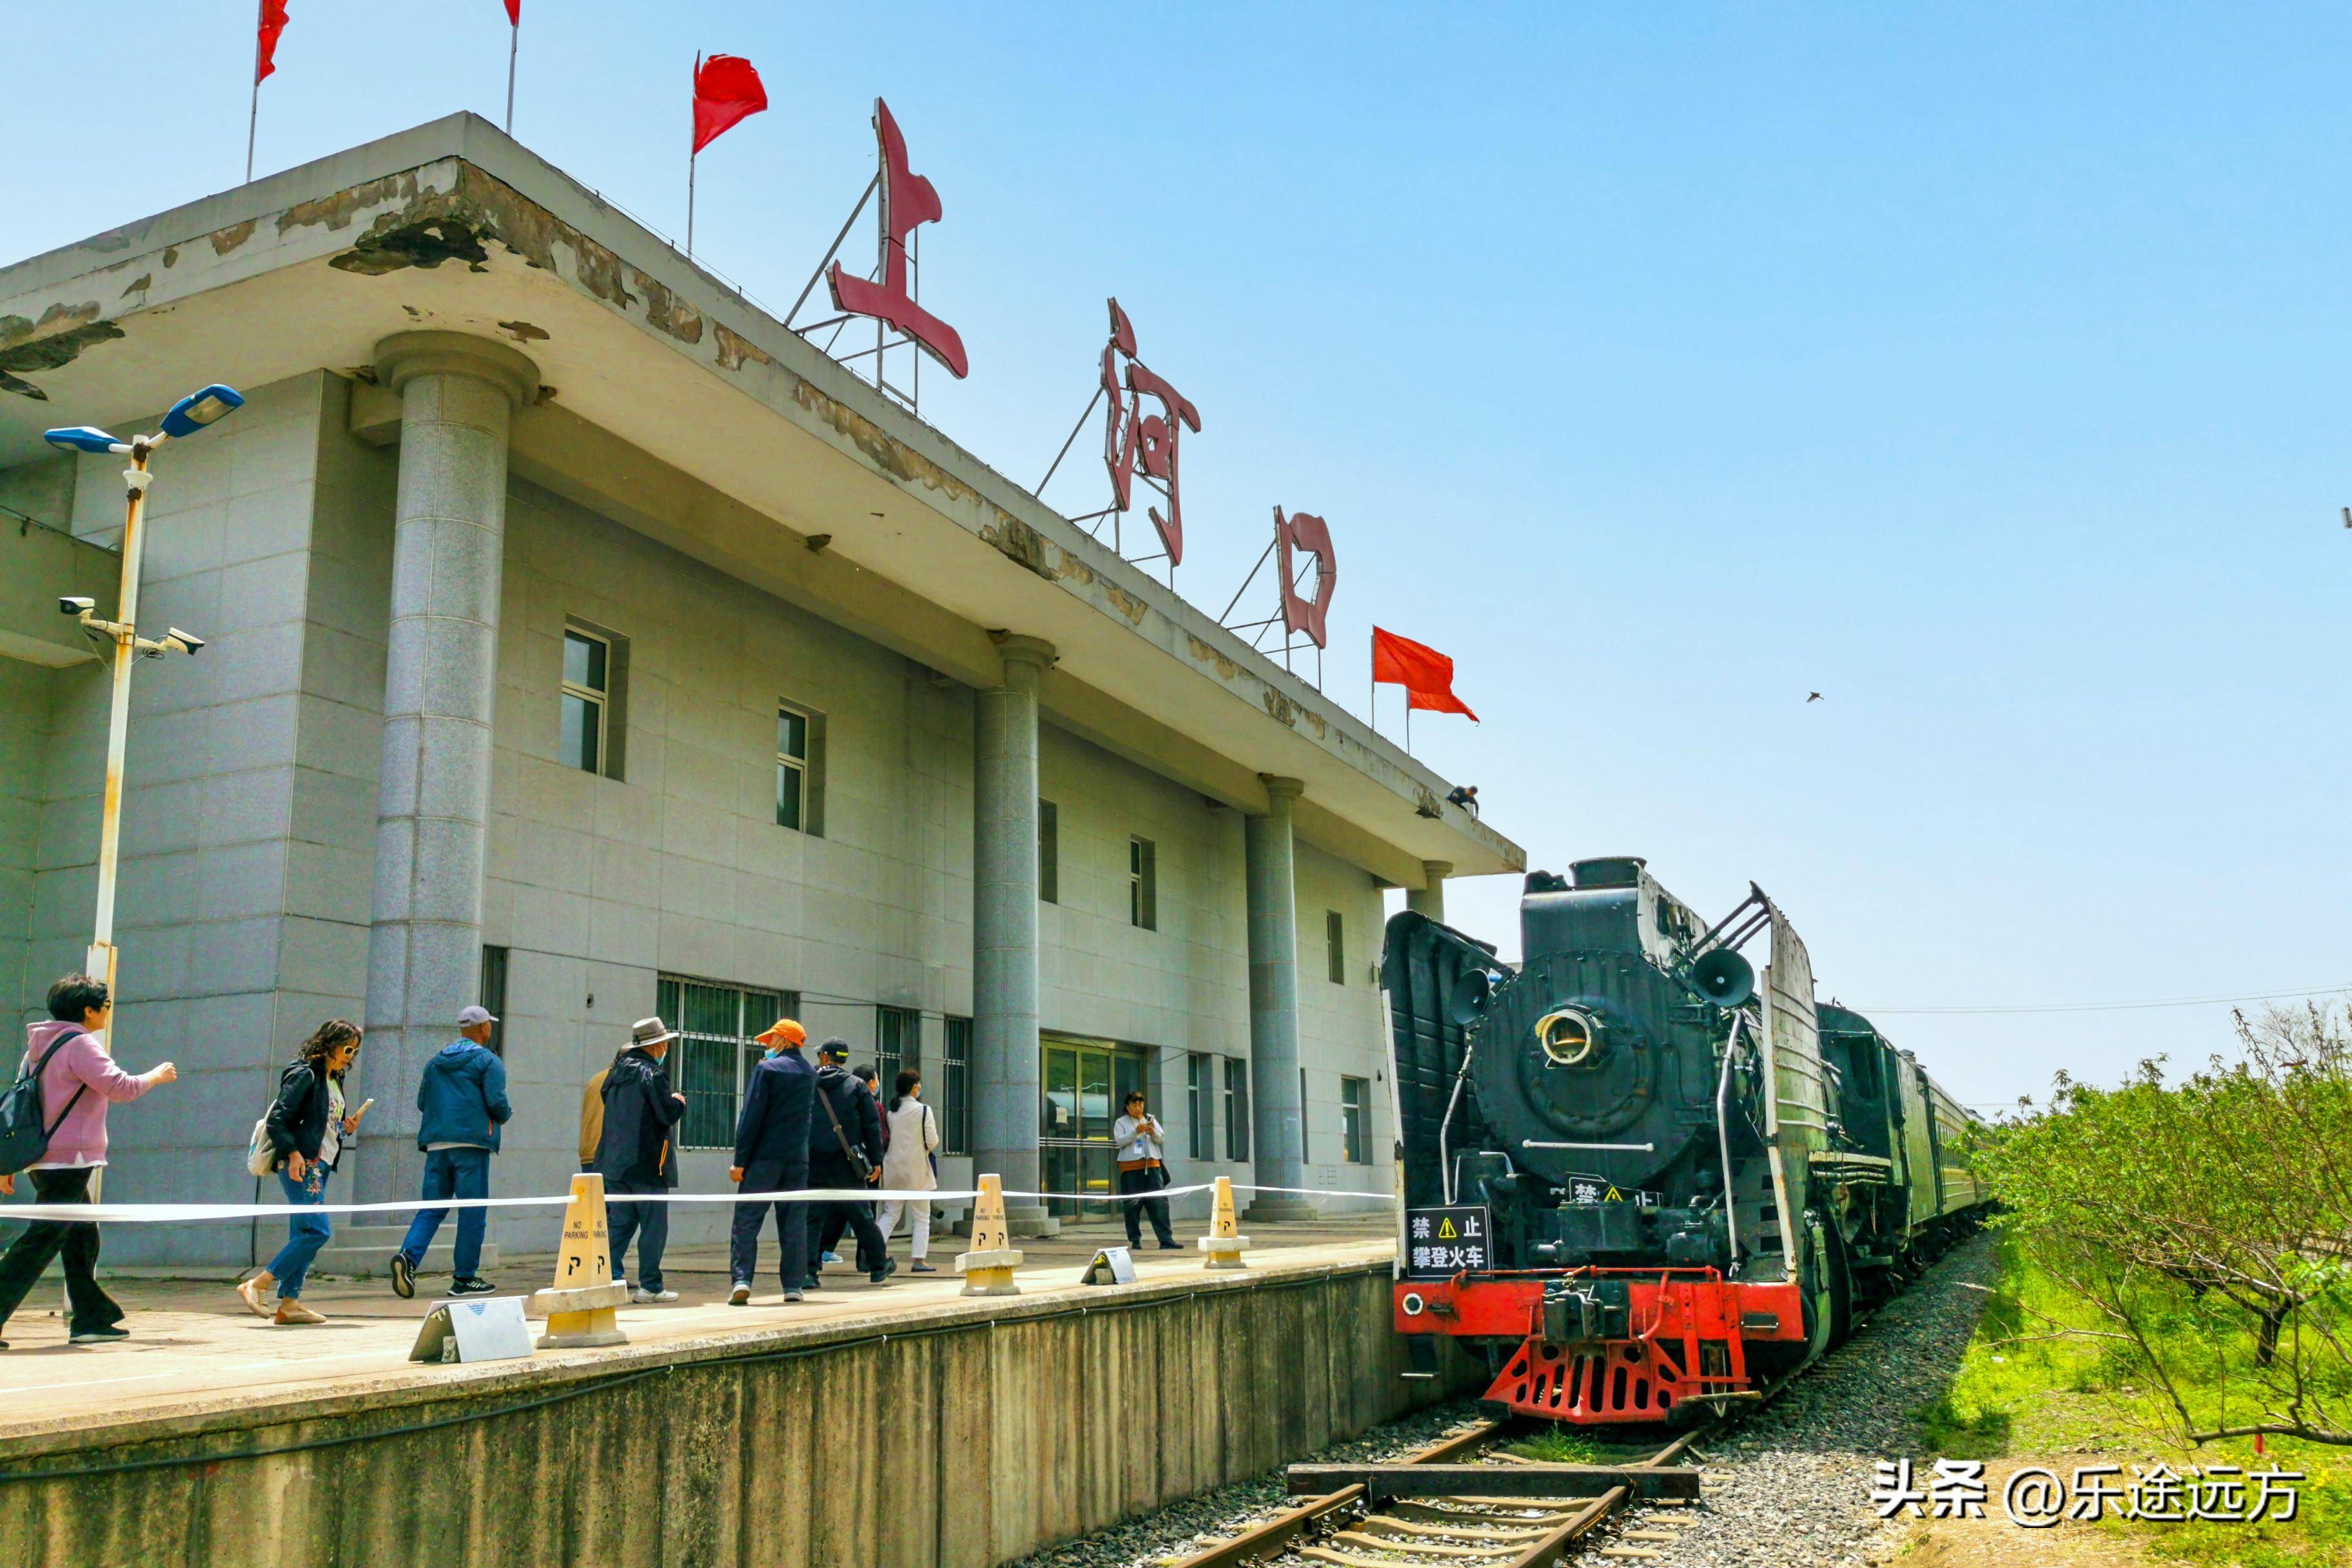 乘坐观光小火车欣赏中朝边境两侧不一样的风景丹东鸭绿江铁路大桥被炸